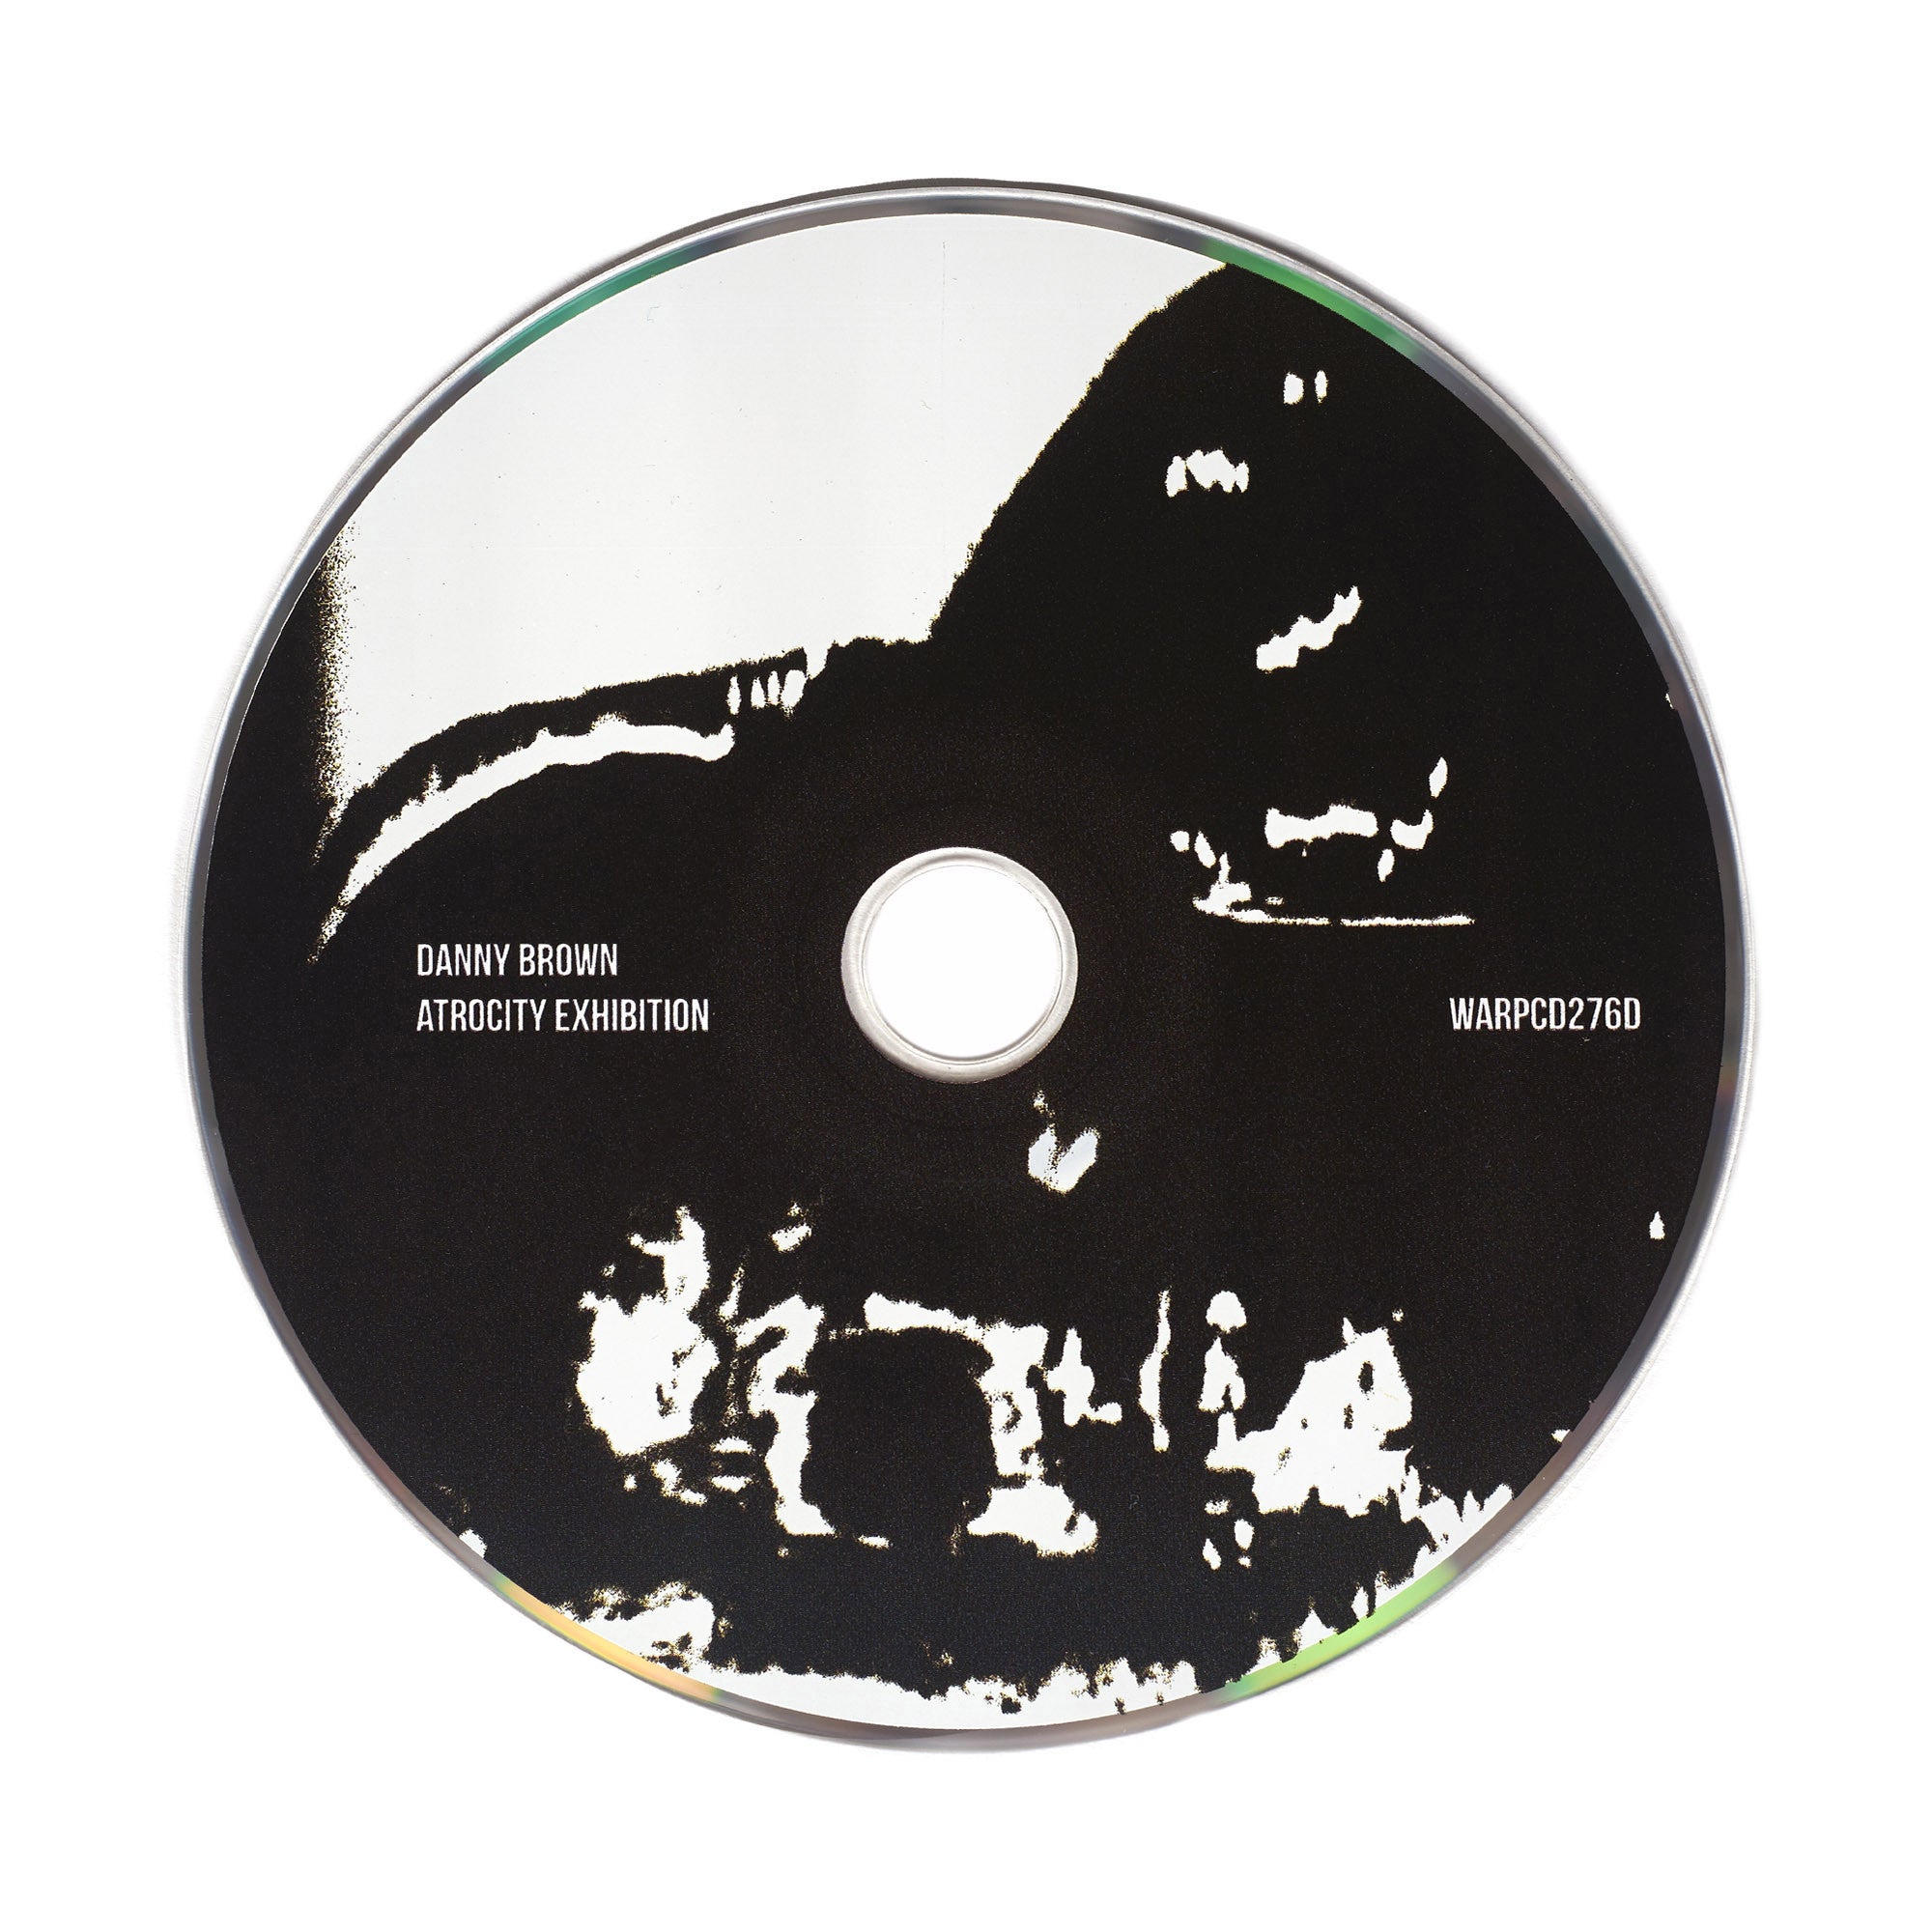 Danny Brown “Atrocity Exhibition” CD